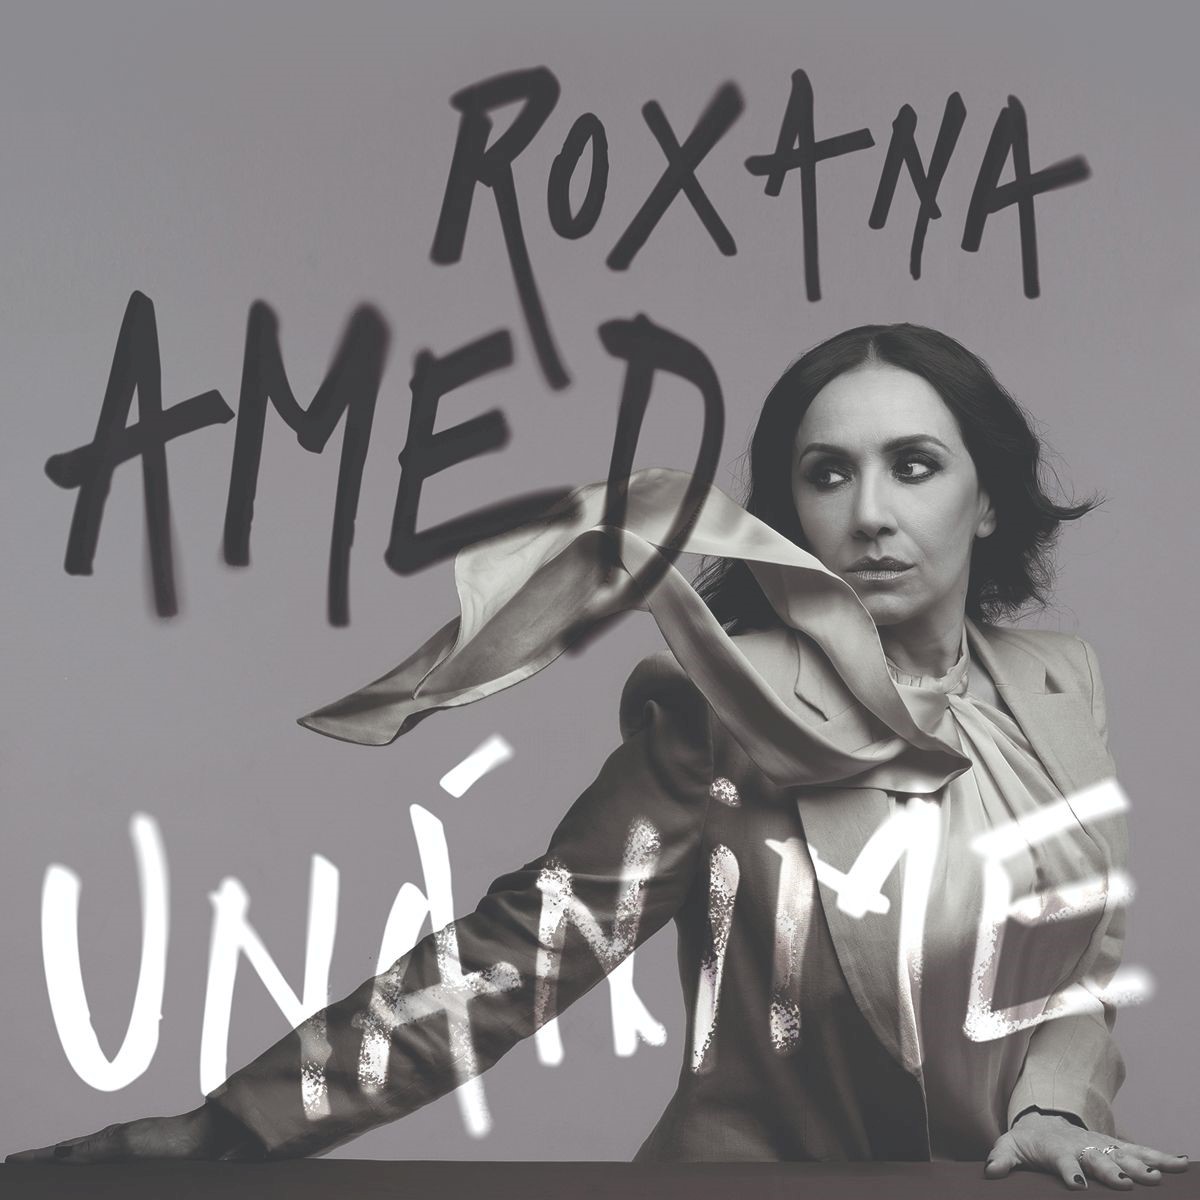 Llega UNÁNIME - nuevo álbum de ROXANA AMED